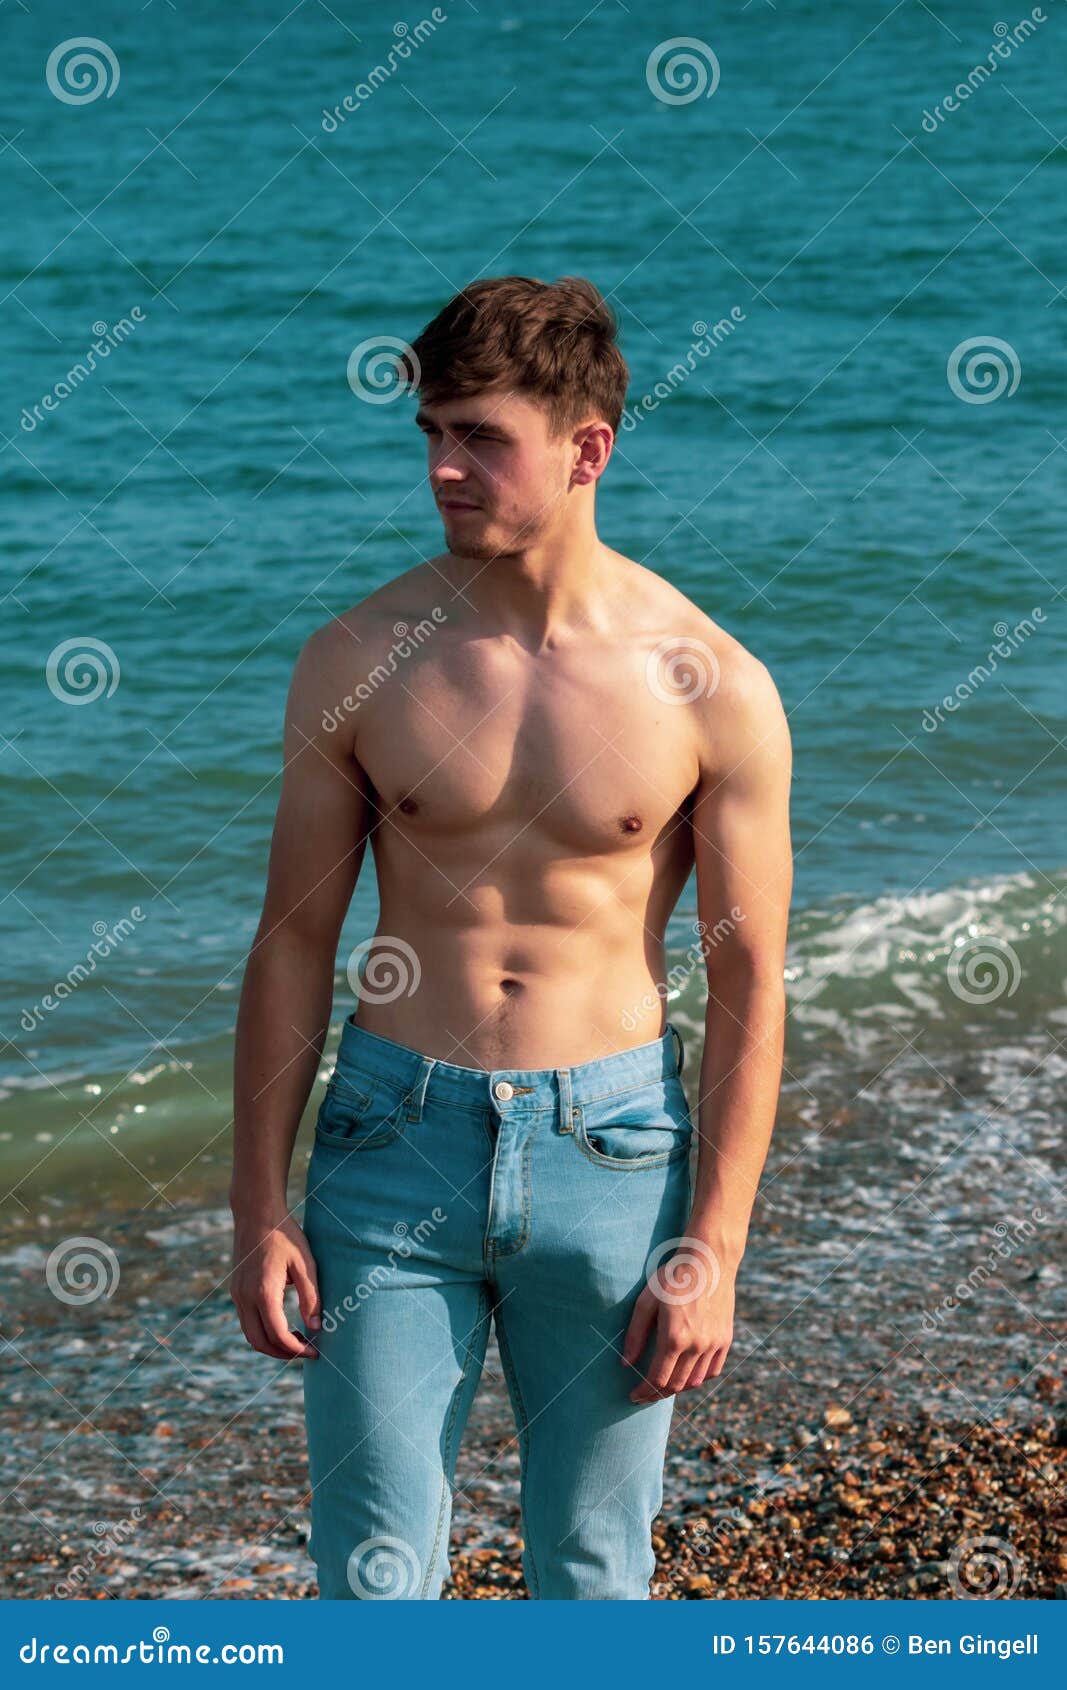 ᐈ Hot male lifeguards stock photos, Royalty Free lifeguard 